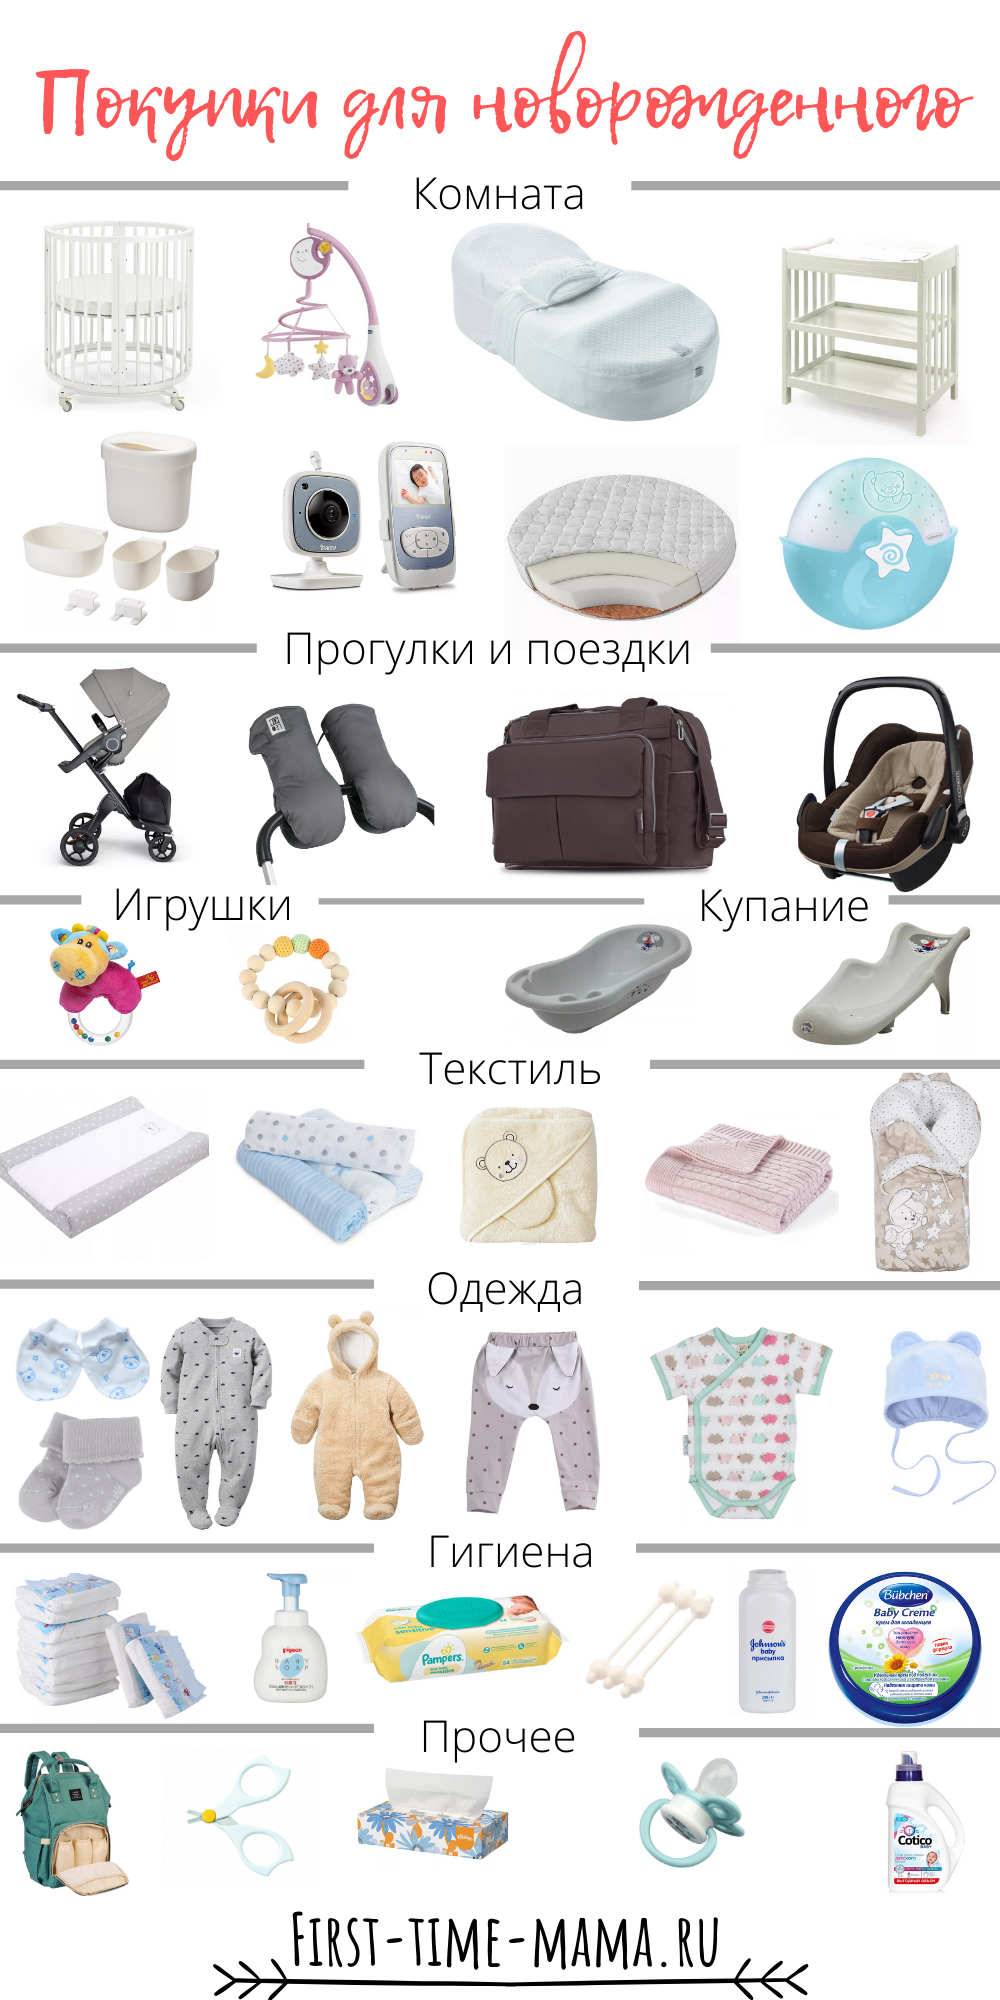 Что нужно новорожденному ребенку летом. Вещи первой необходимости для новорожденного после роддома. Одежда для новорожденного список необходимого. Список вещей для новорожденного. Список однждыдля новорожденного.